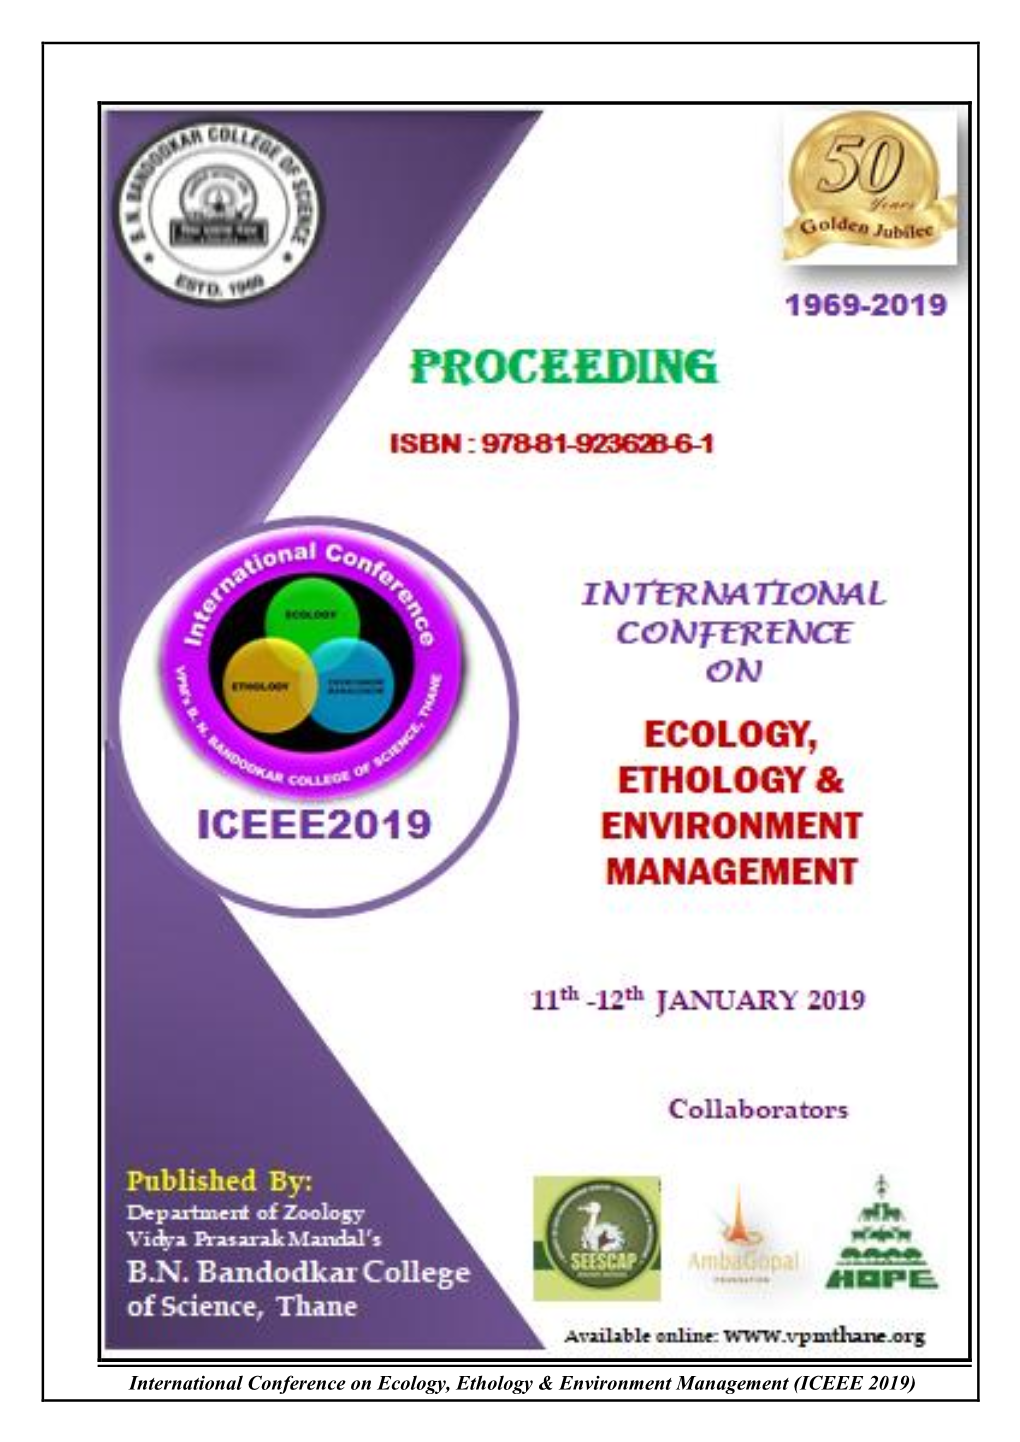 International Conference on Ecology, Ethology & Environment Management